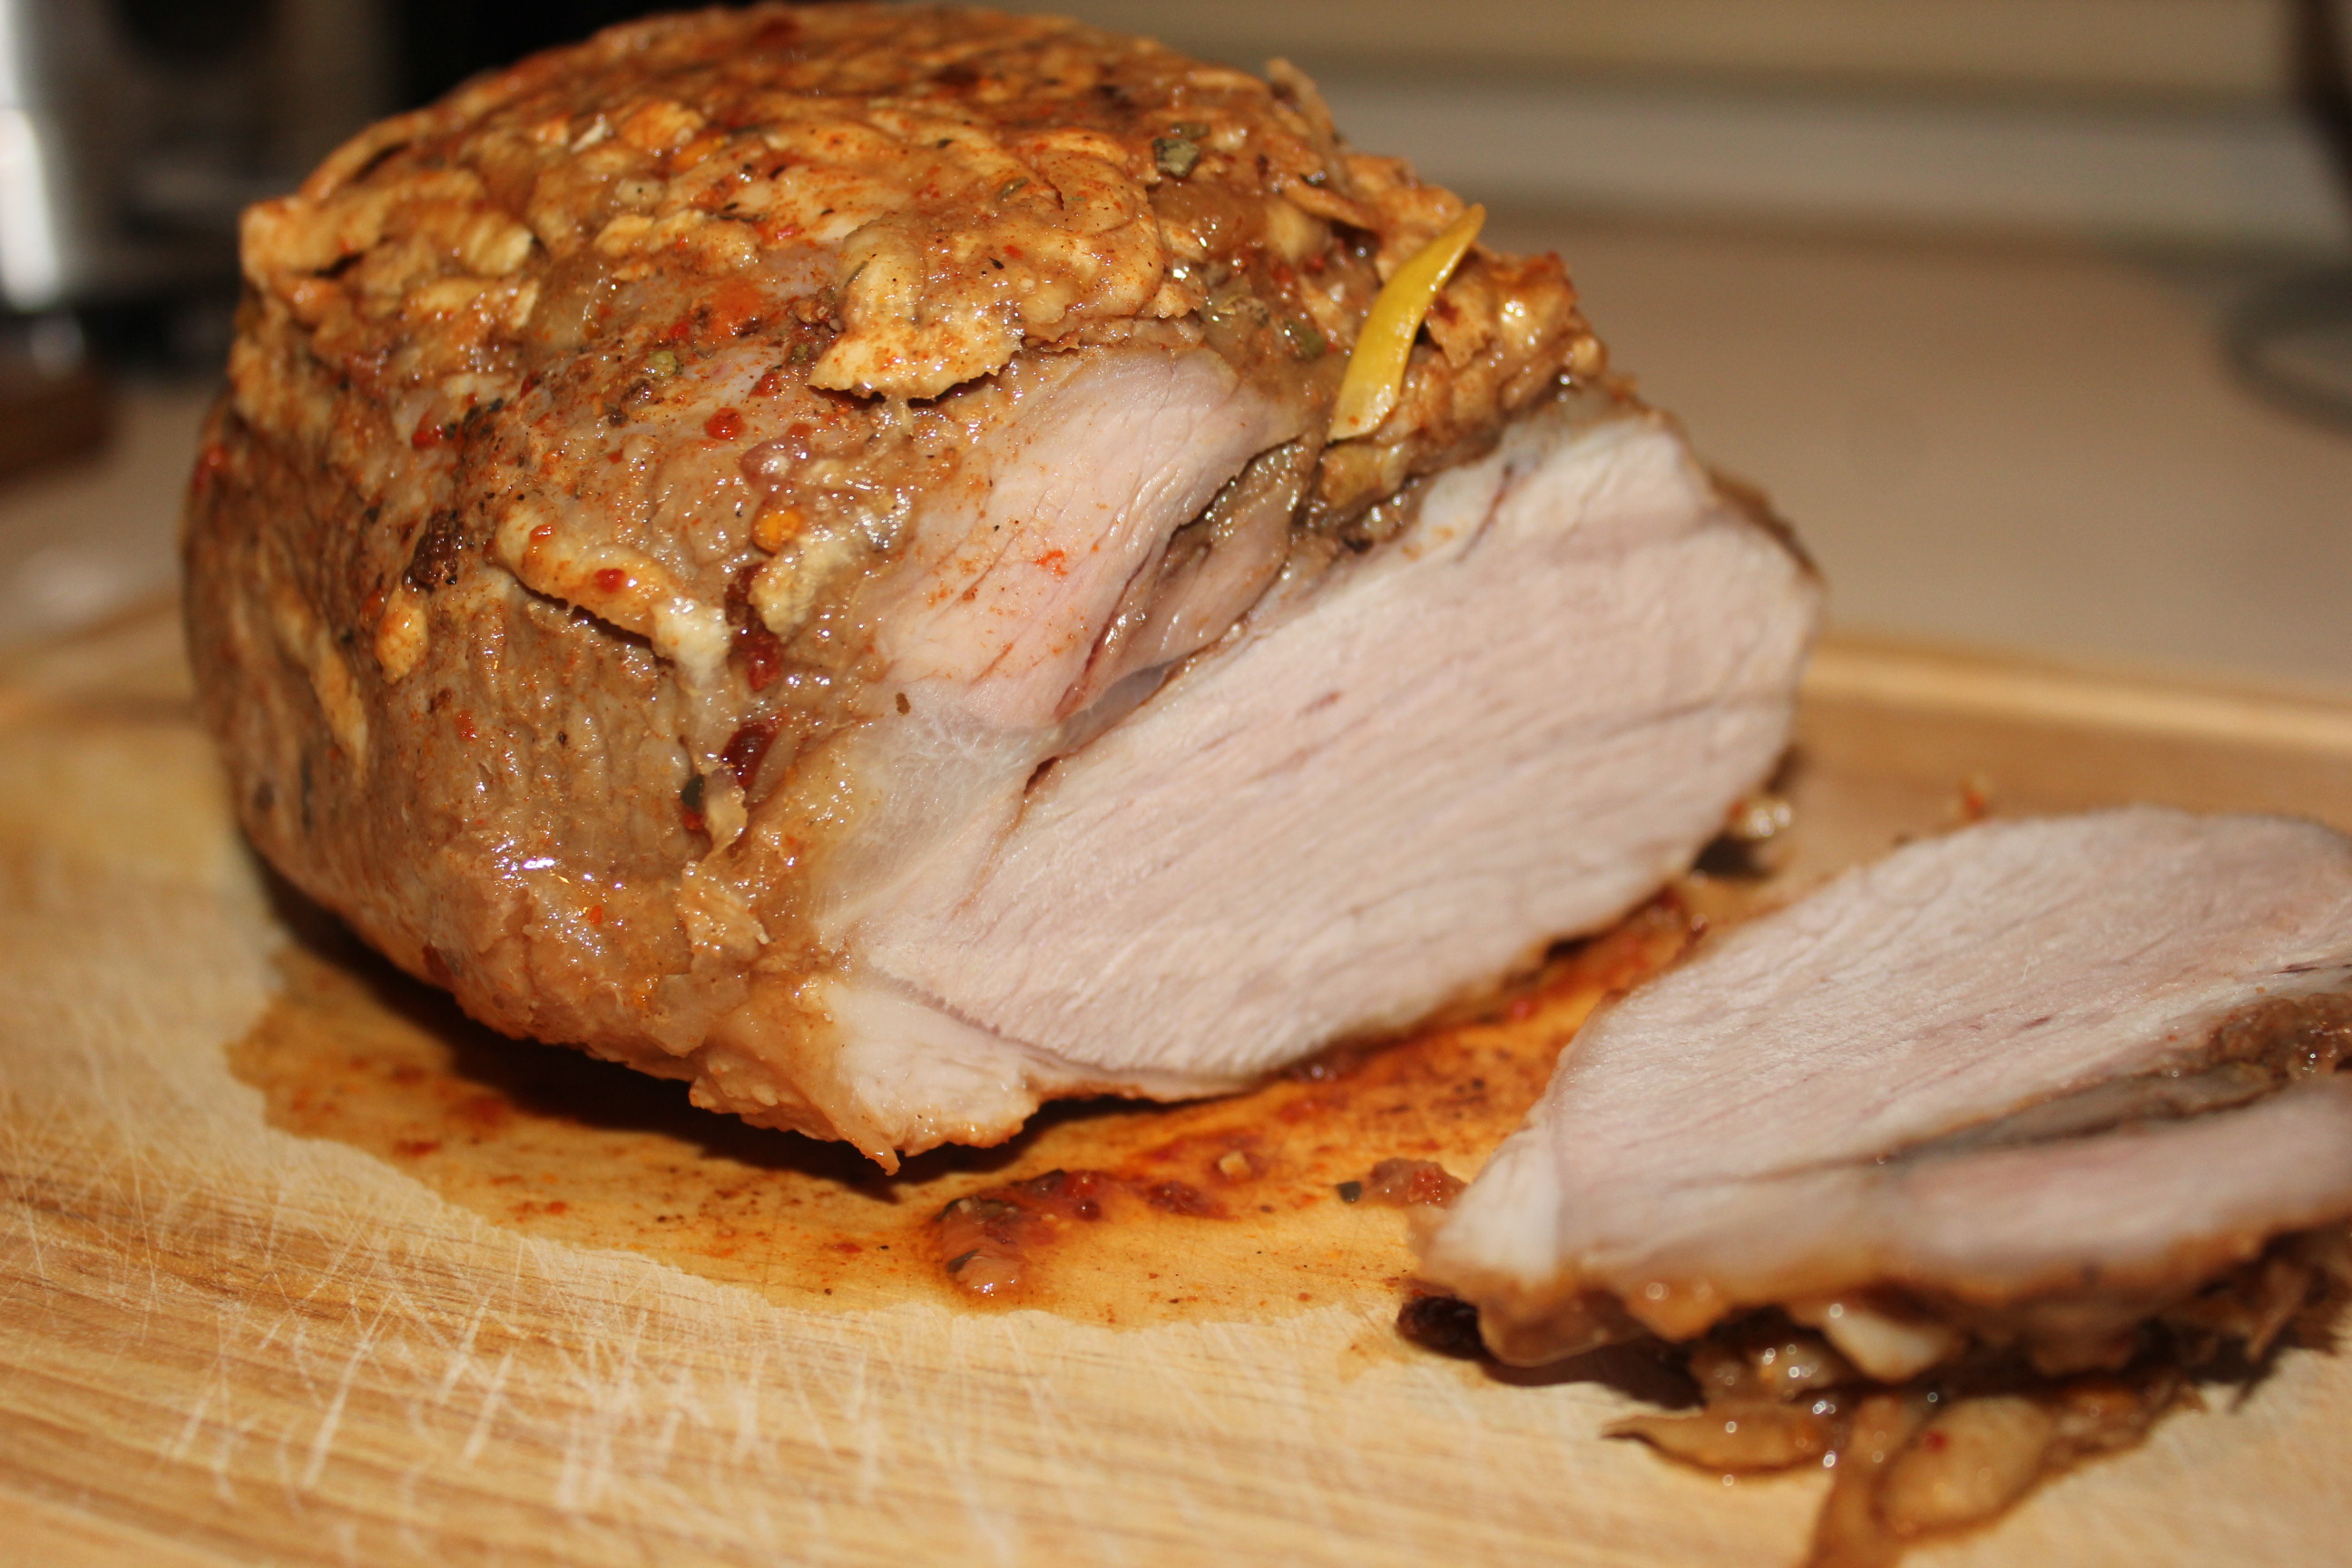 Буженина из свинины в домашних условиях — 10 классических рецептов в духовке